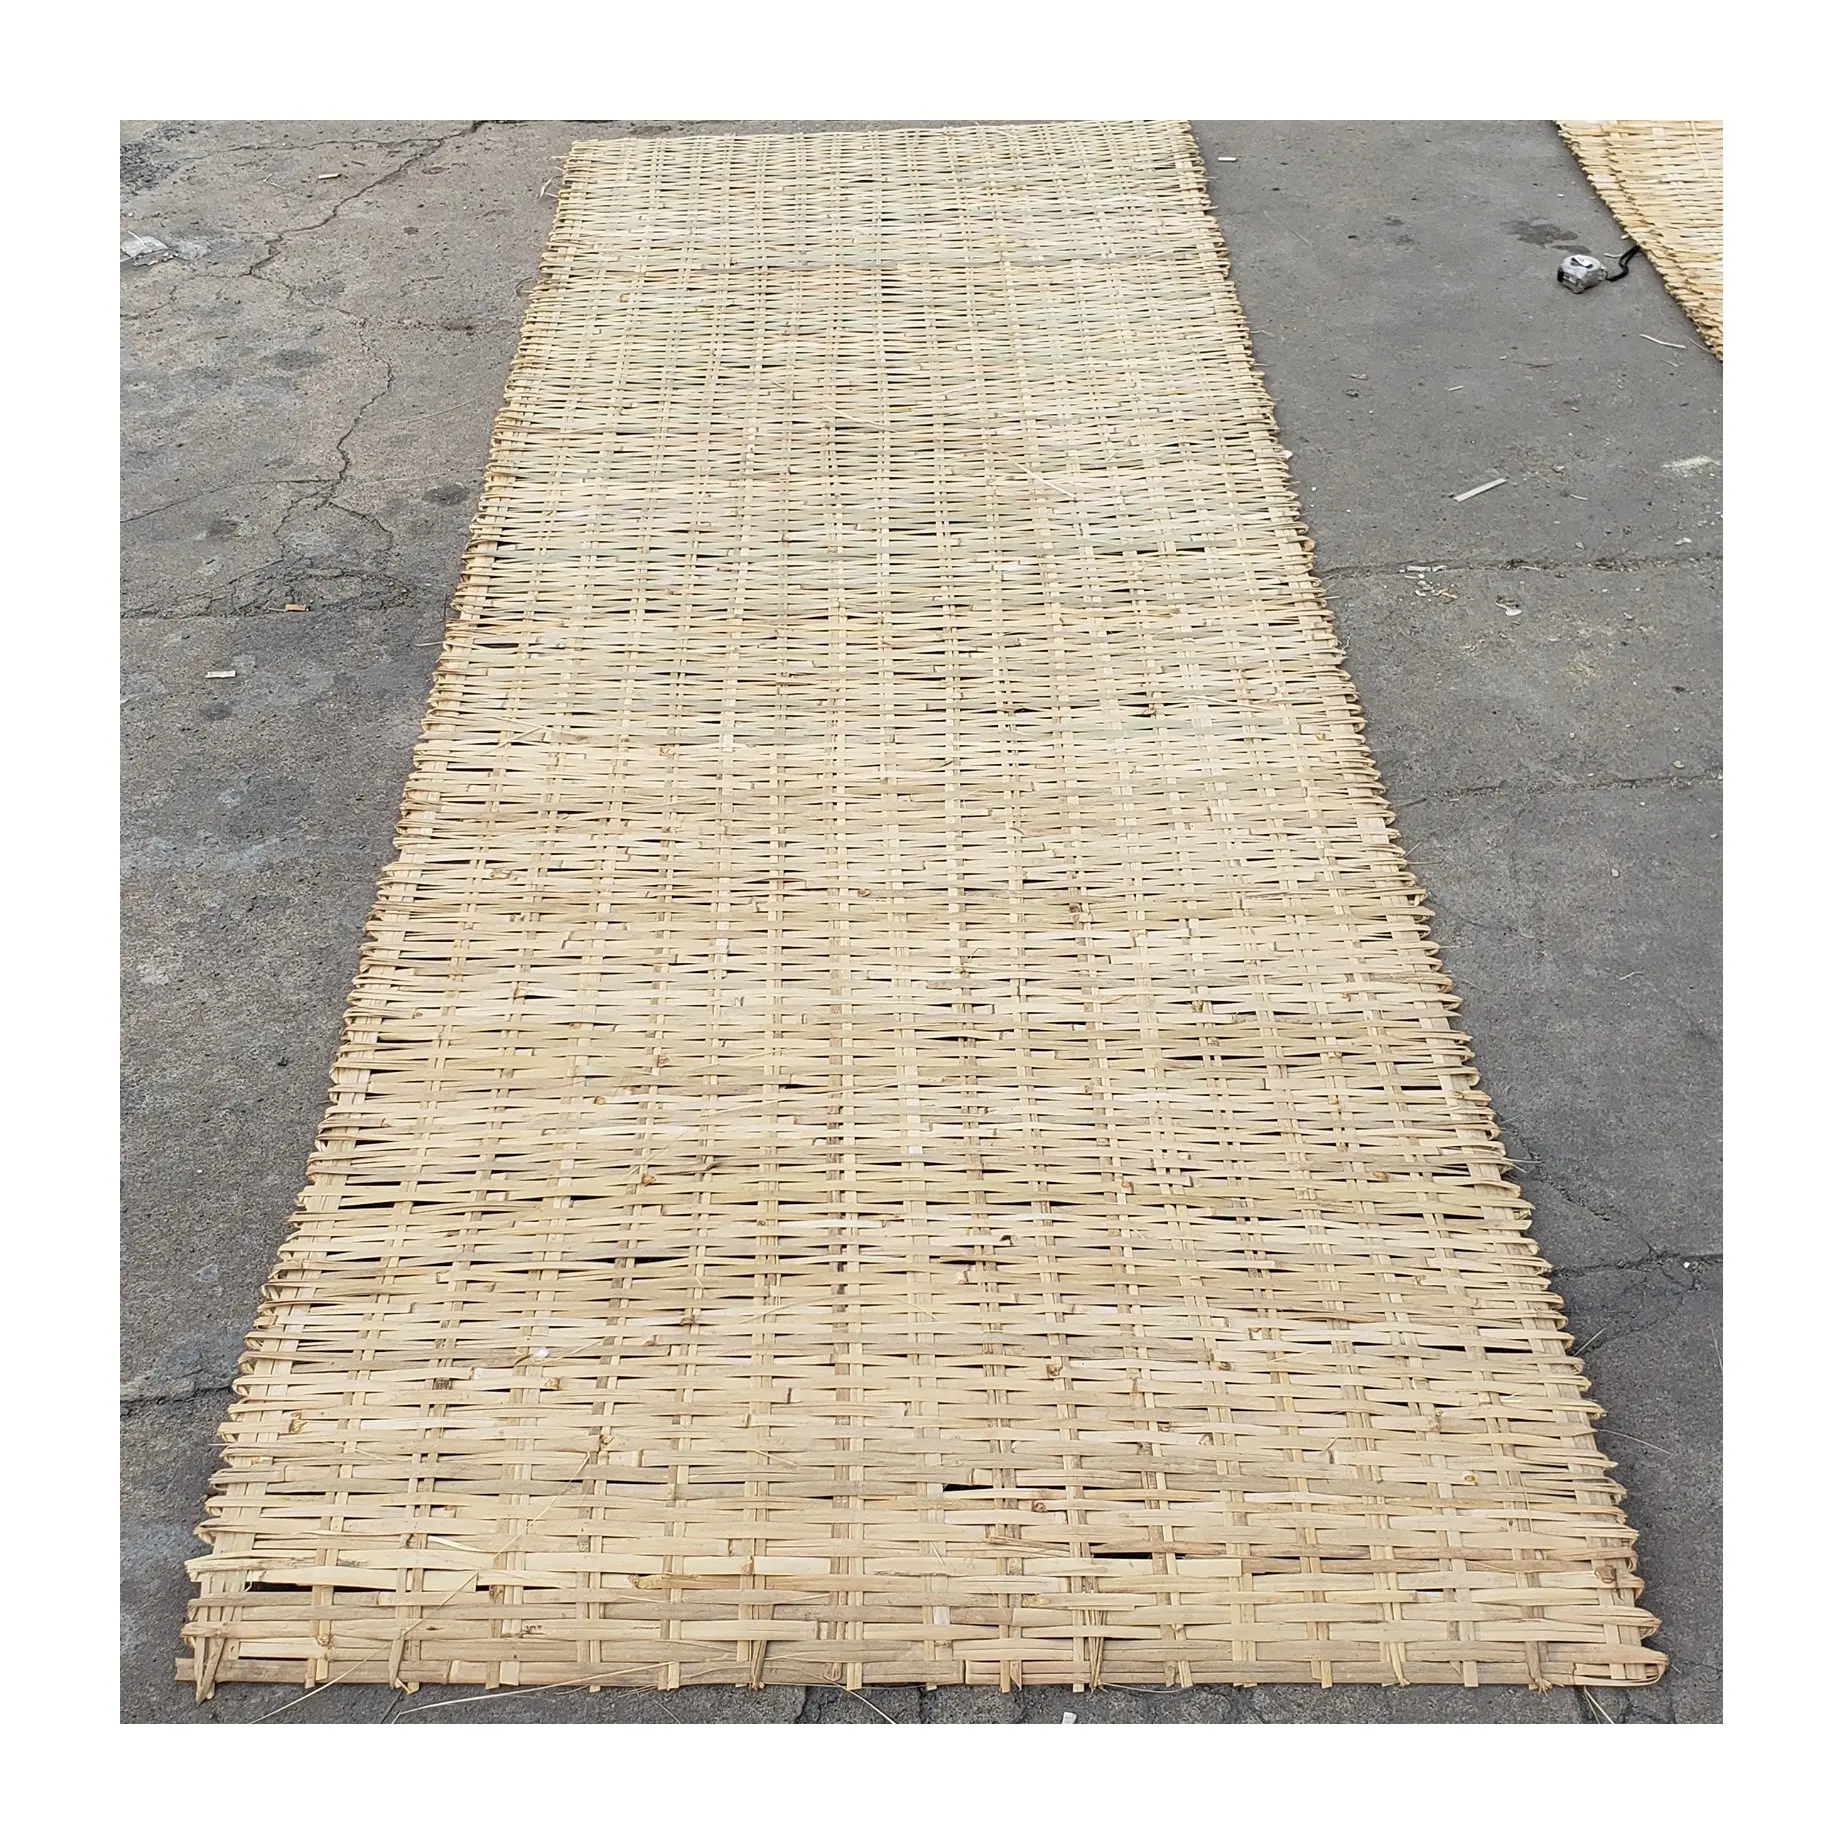 Тонкая фанера из бамбукового волокна, настенная панель, плетеные рулоны премиум качества, конкурентоспособная цена, готов к экспорту